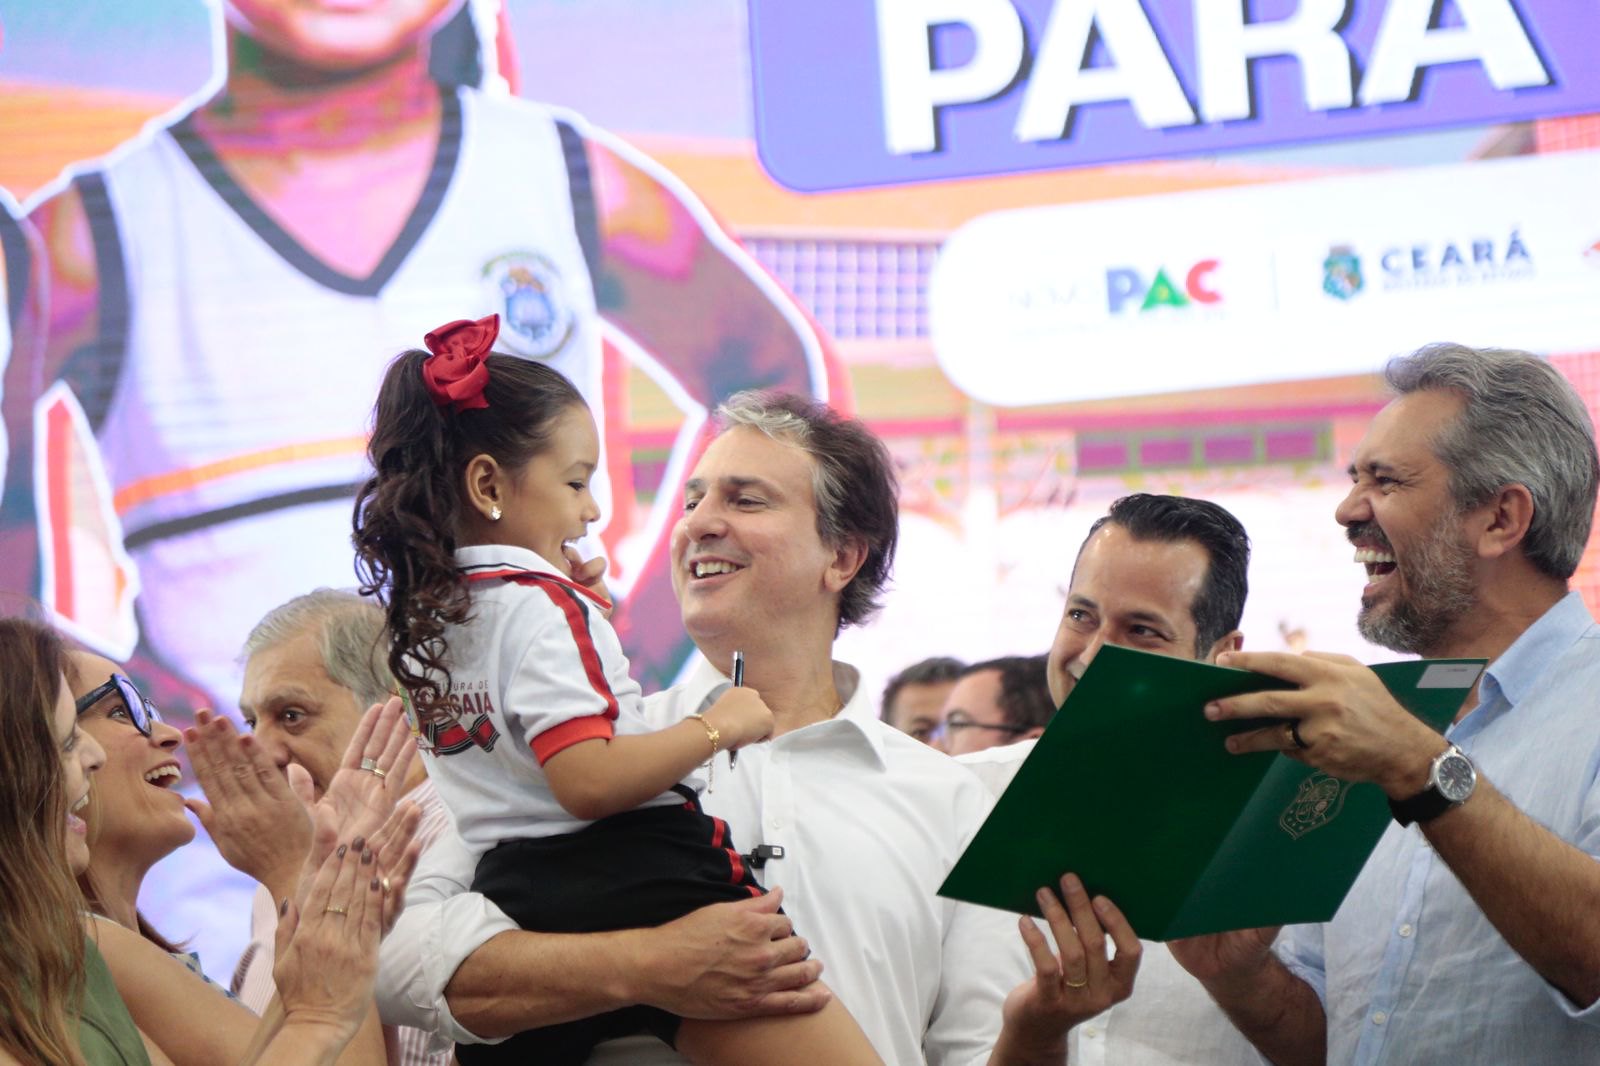 Educação infantil será ampliada no Ceará com novas creches em 57 municípios